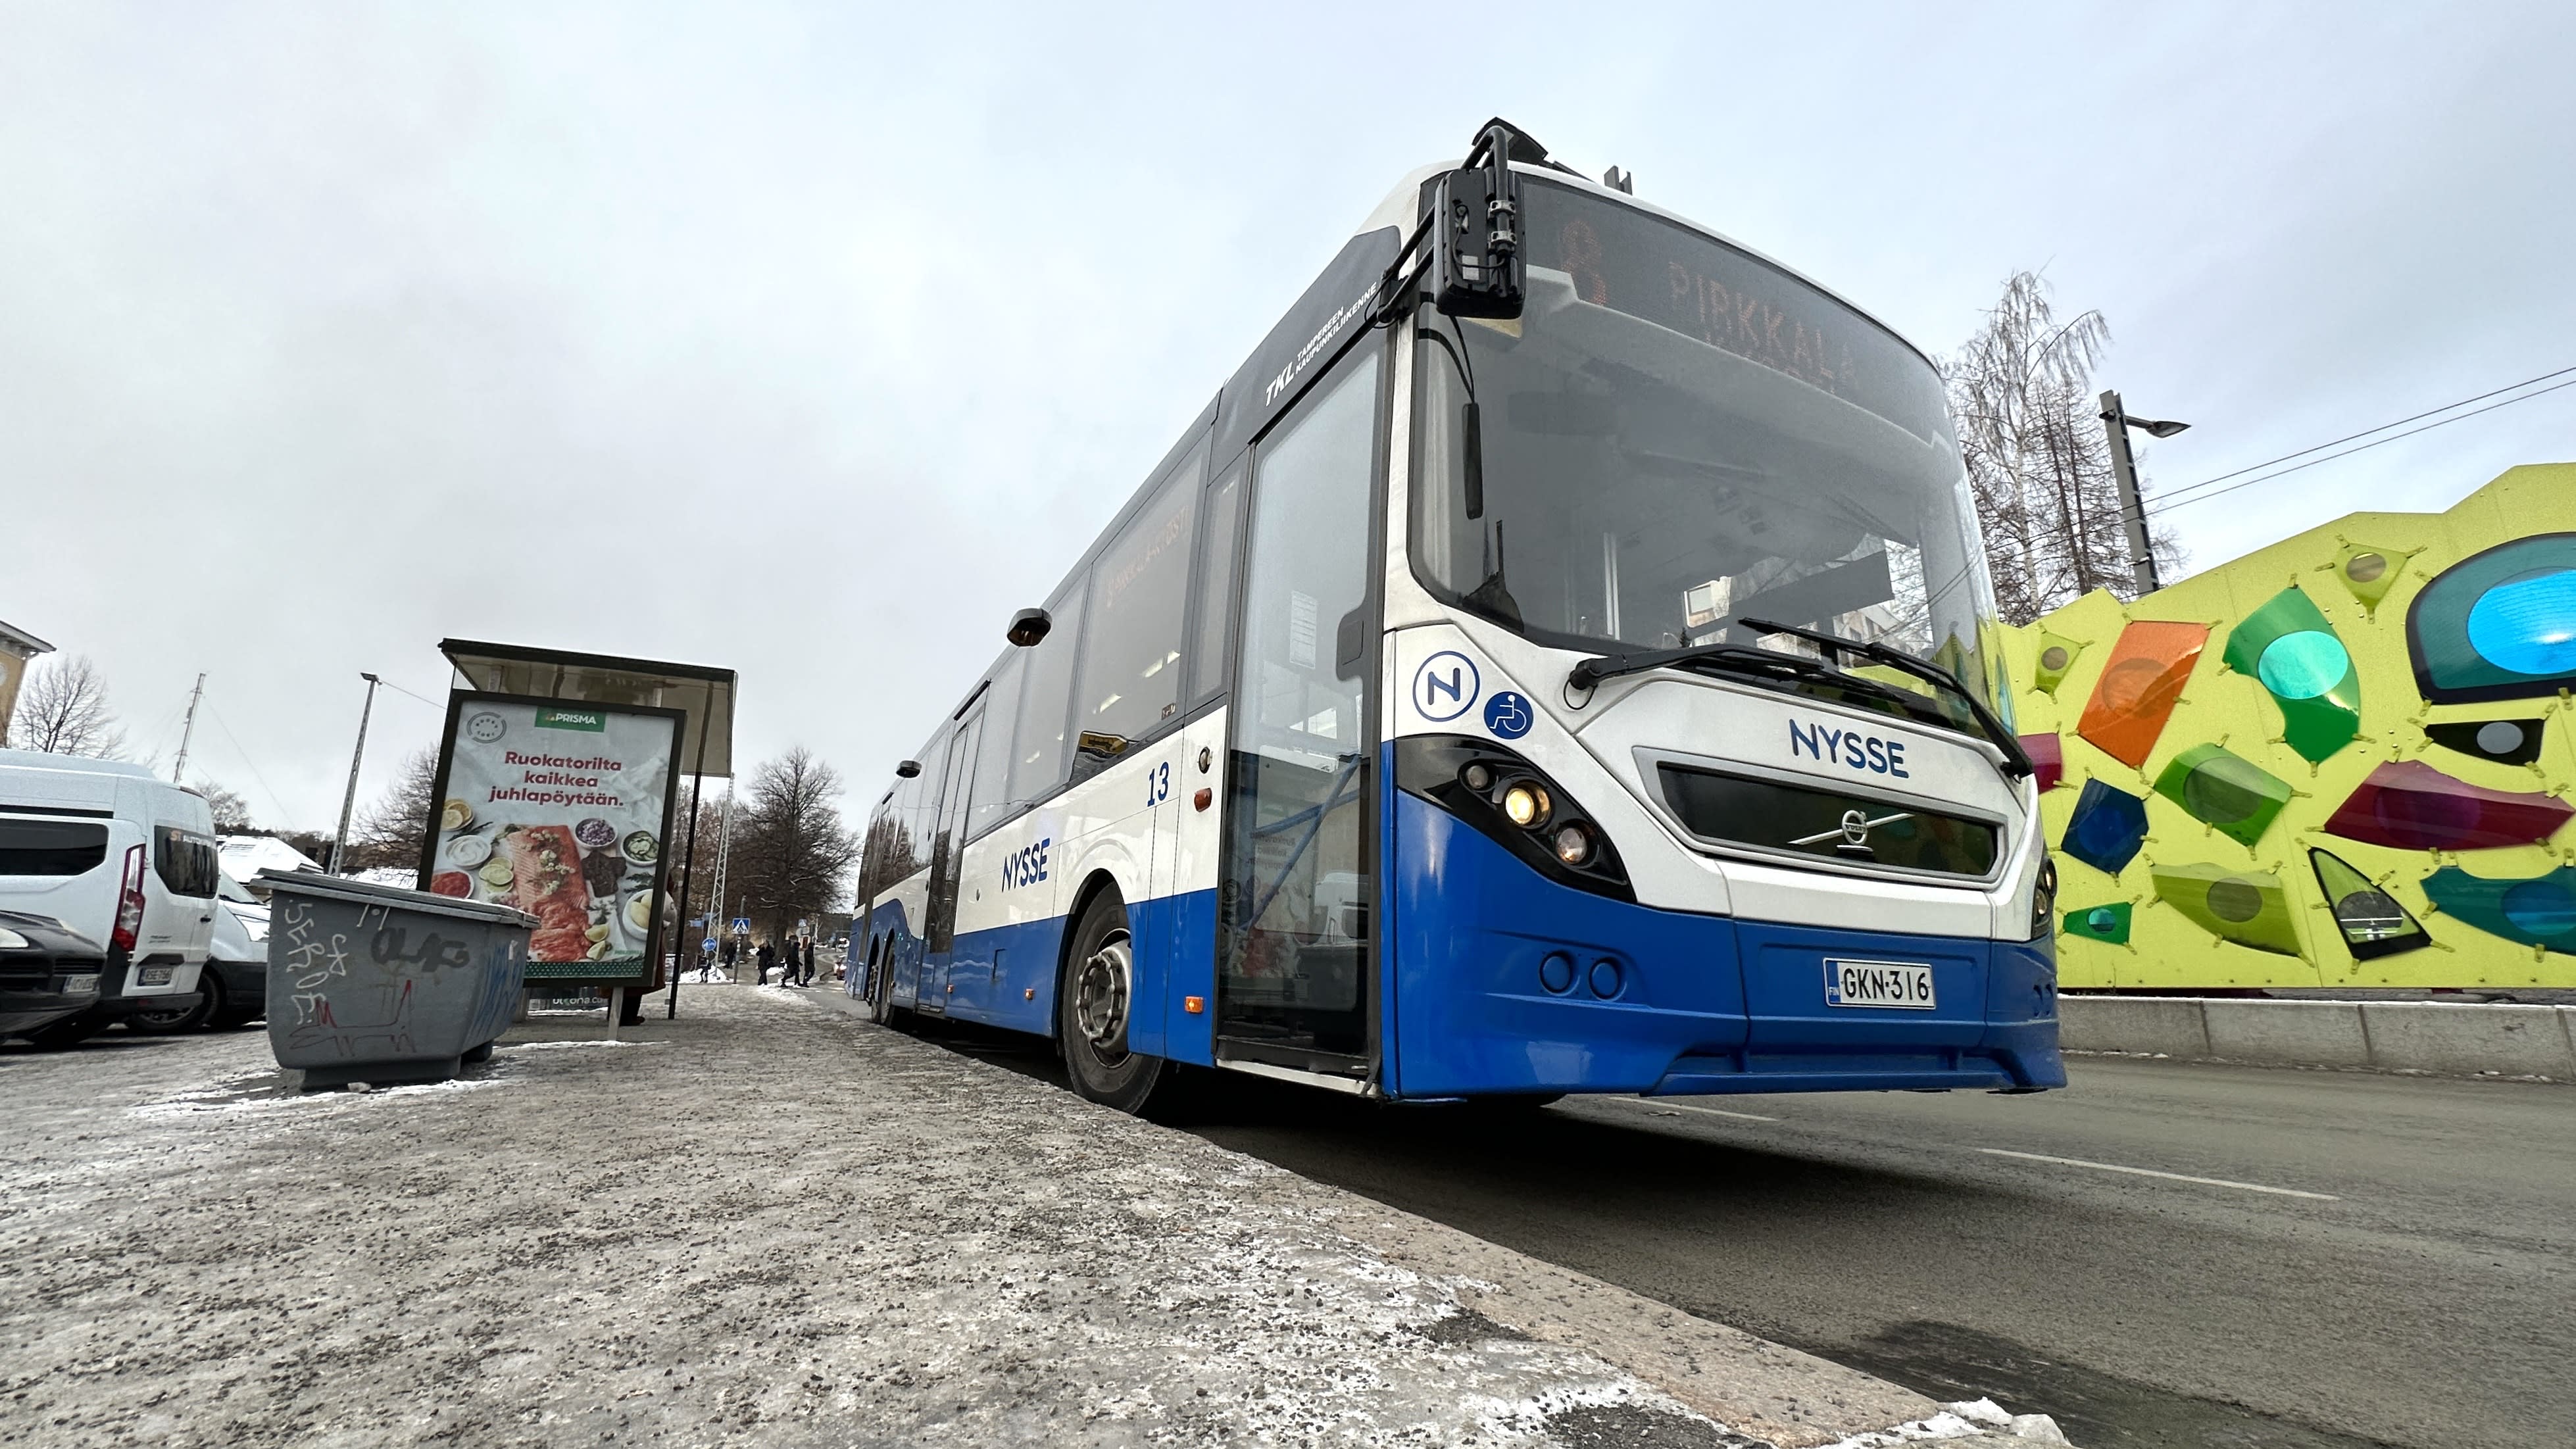 목요일 신문: 탐페레(Tampere)와 야코마키(Jakomaki) 유리 수업 중 국경에서 "러시아 체스 말" 버스 파업